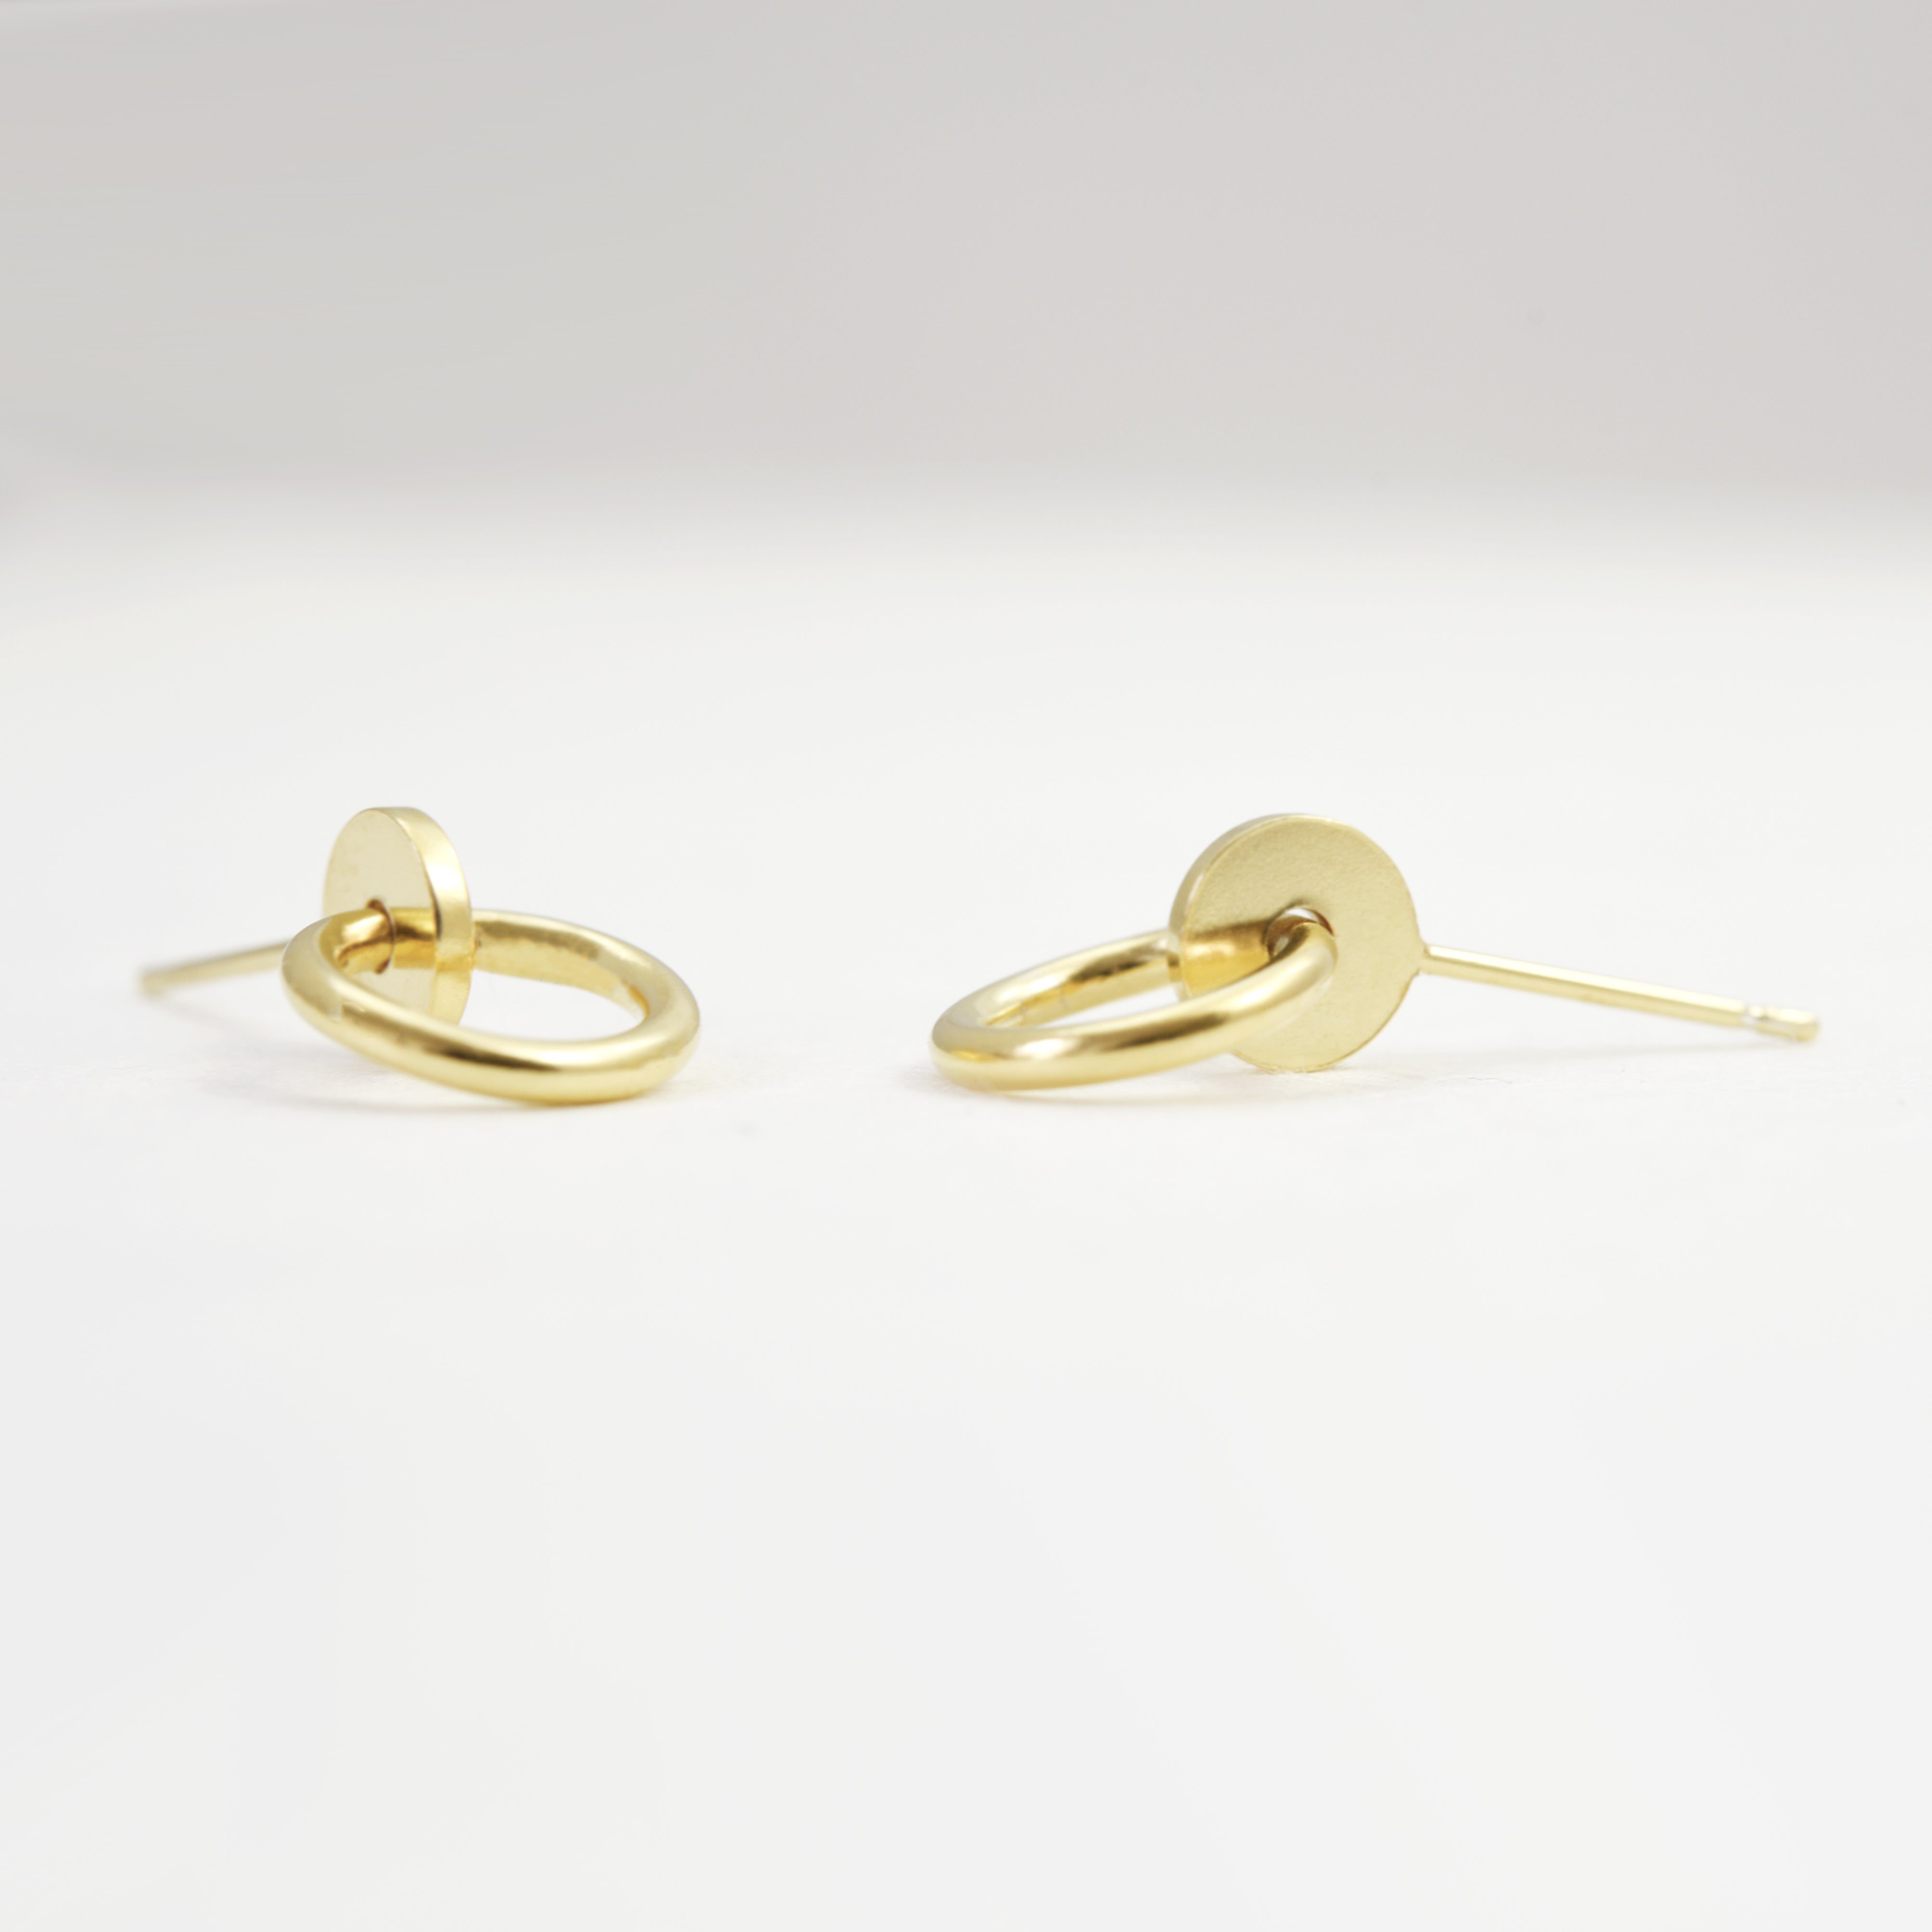 Shop Gold Stud Earrings in Singapore - Mustafa Jewellery